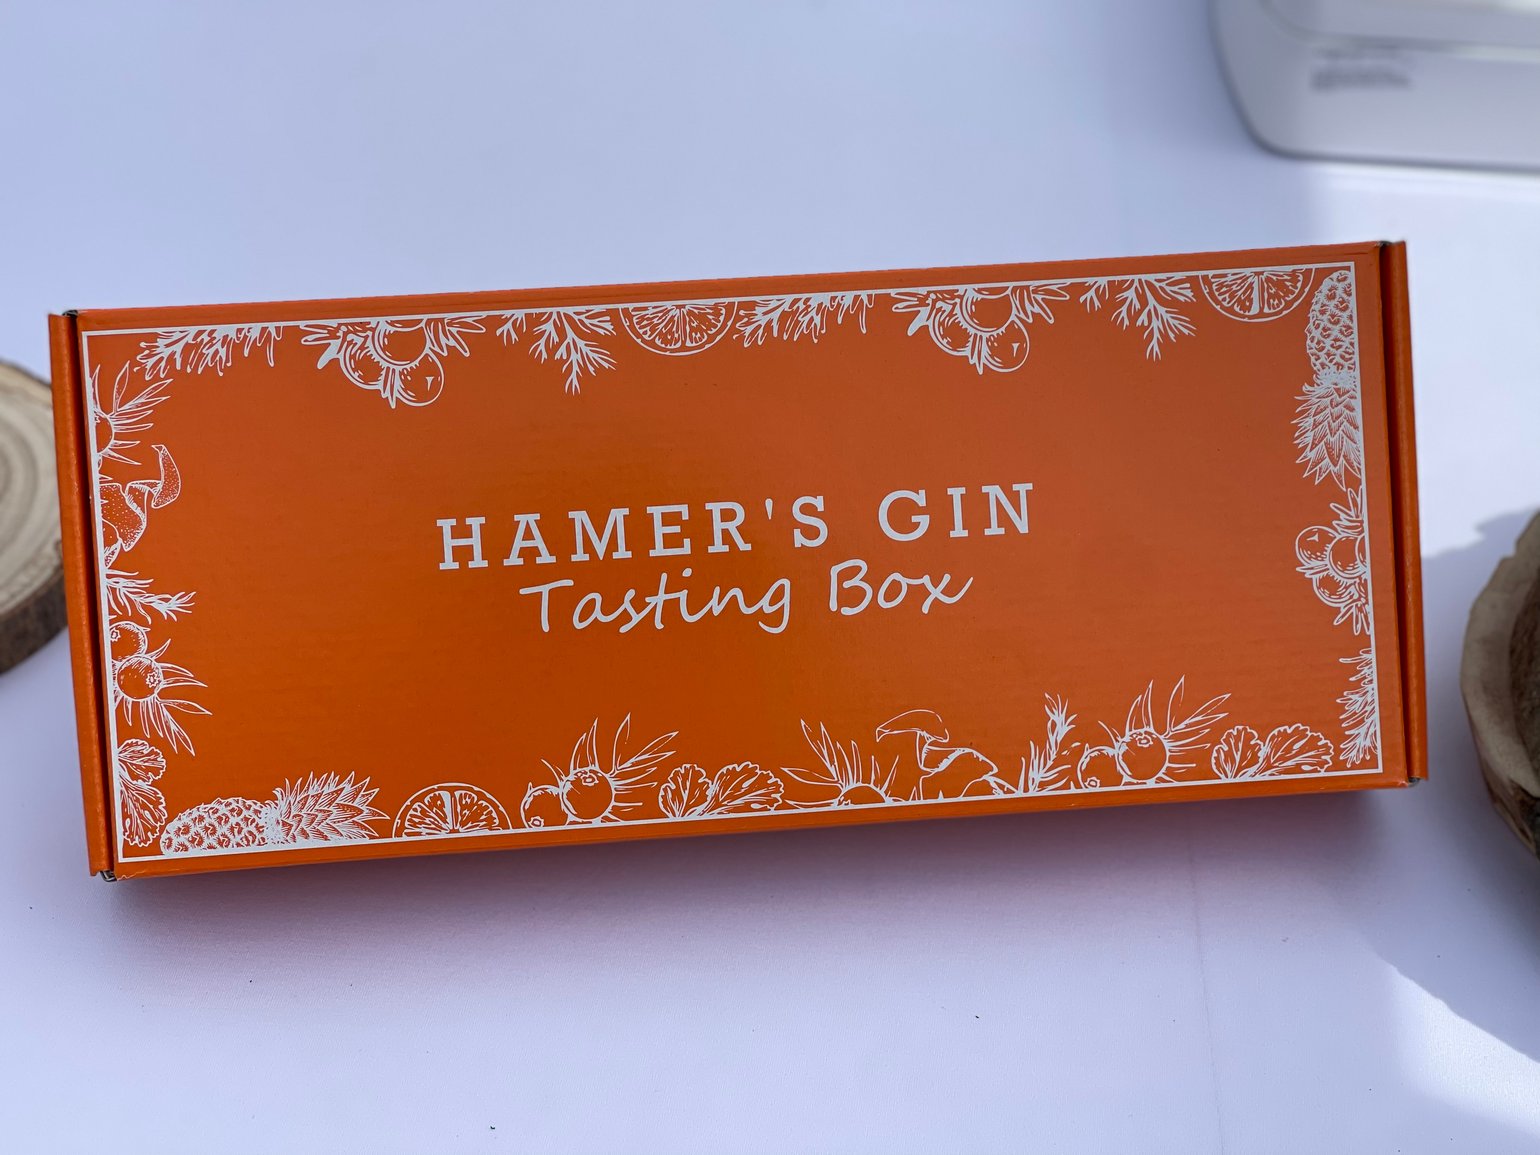 Hamer’s Tasting Box | Hamer's Gin - Made in Luxembourg